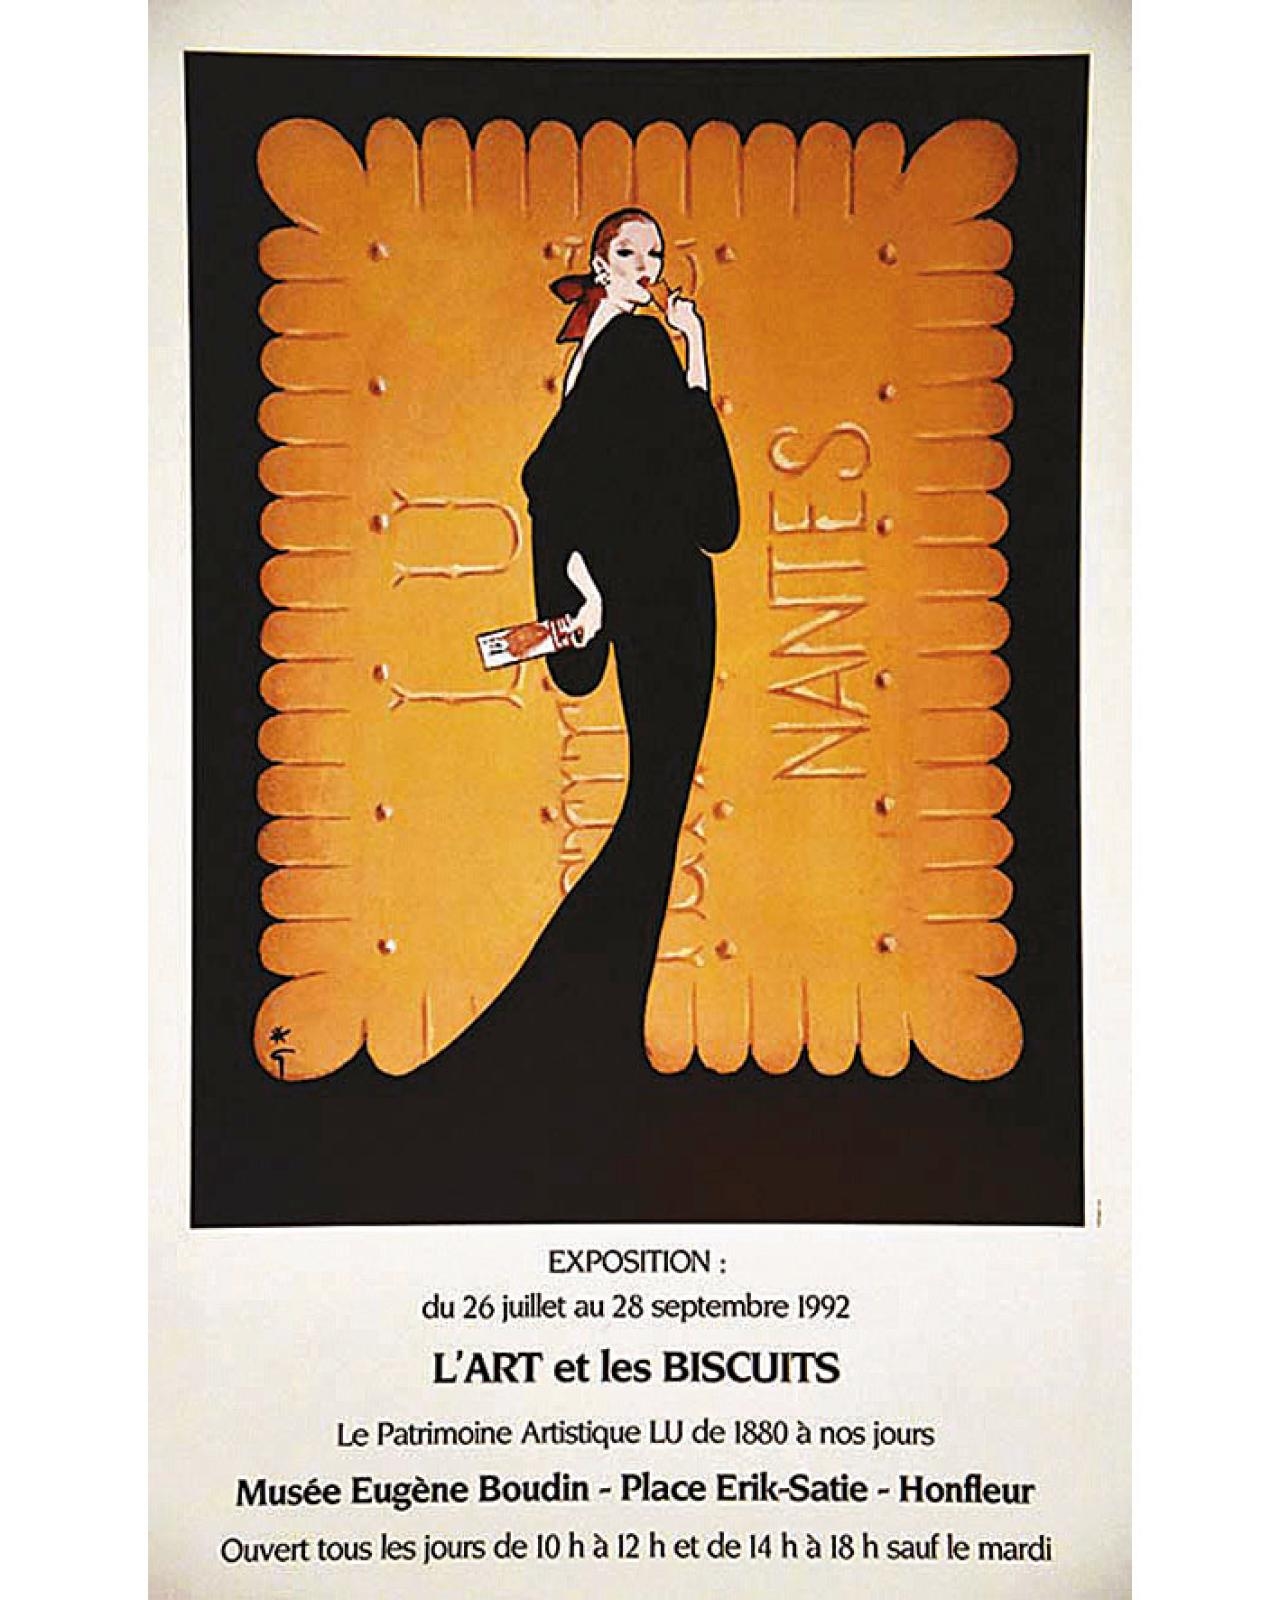 L'Art & Les Biscuits by René Gruau, 1992